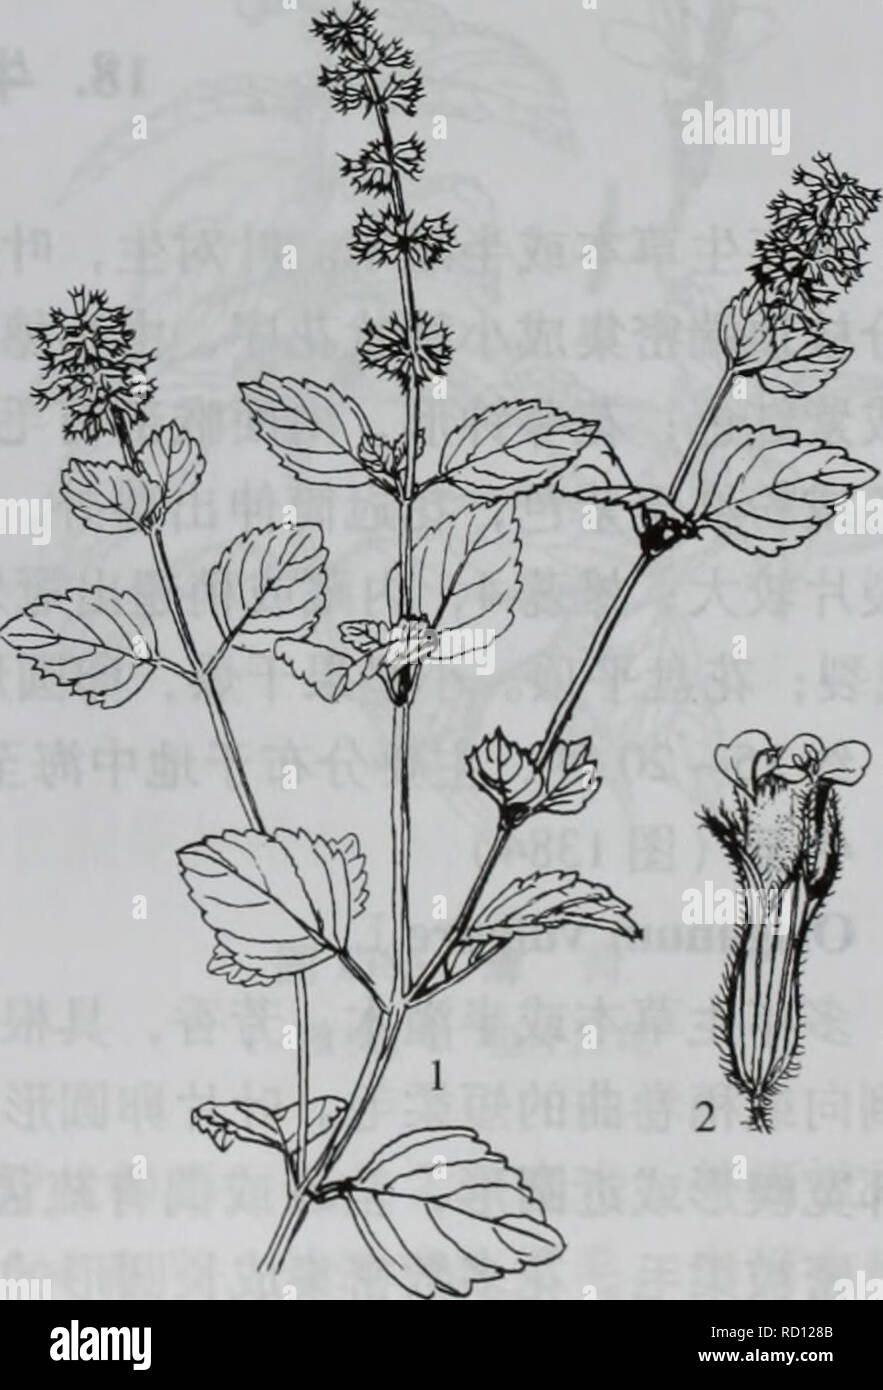 . da bie shan zhi wu zhi. botany. 2. é£è½¦èï¼å¾1380) Clinopodium urticifolium (Hance) C. Y. Wu et Hsuan ex H. W. Li å¤å¹´çèæ¬ï¼æ ¹èæ¨è´¨ãèç´ç«ï¼é«2080åç±³ï¼éåæ£±å½¢ï¼å¸¸å¸¦ç´«çº¢è²ï¼è¢«åä¸ç-ç¡¬ æ¯ãå¶çåµåå½¢ï¼åµç¶é¿åå½¢è³åµç¶æ«éå½¢ï¼é¿36åç±³ï¼å®½13åç±³ï¼å ç«¯éææ¥å°ï¼åº é¨åå½¢è³è¿å¹³æªï¼è¾¹ç¼å ·é¯é½¿ï¼ä¸¤é¢è¢«æ¯ï¼ä¾§è67å¯¹ï¼ä¸é¨å¶æè¾é¿ï¼åä¸æ¸ç-ï¼é¿2 12æ¯«ç±³ï¼å¯è¢«å ·èææ¯ãè½®ä¼è±åºå¤è±å¯éï¼åçå½¢ï¼å¾23åç±³ï¼çç¦»ï¼èå¶å¶ç¶ï¼ä¸é¨ è è¶ åºè½®ä¼è±åºï¼ä¸é¨è ä¸è½®ä¼è±åºç-é¿ï¼ä¸åèçç¶ï¼èççº¿ å½¢ï¼å ·ææ¾ä¸-èï¼æ»è±æ¢é¿3 5æ¯«ç±³ï¼åæå¤æ°ï¼è±æ¢é¿1.5  2. 5æ¯«ç±³ï¼ä¸æ»æ¢åè±åºè½´å¯è¢«ææ¯ï¼è±è¼ç-ç®¡ç¶ï¼é¿çº Stock Photo